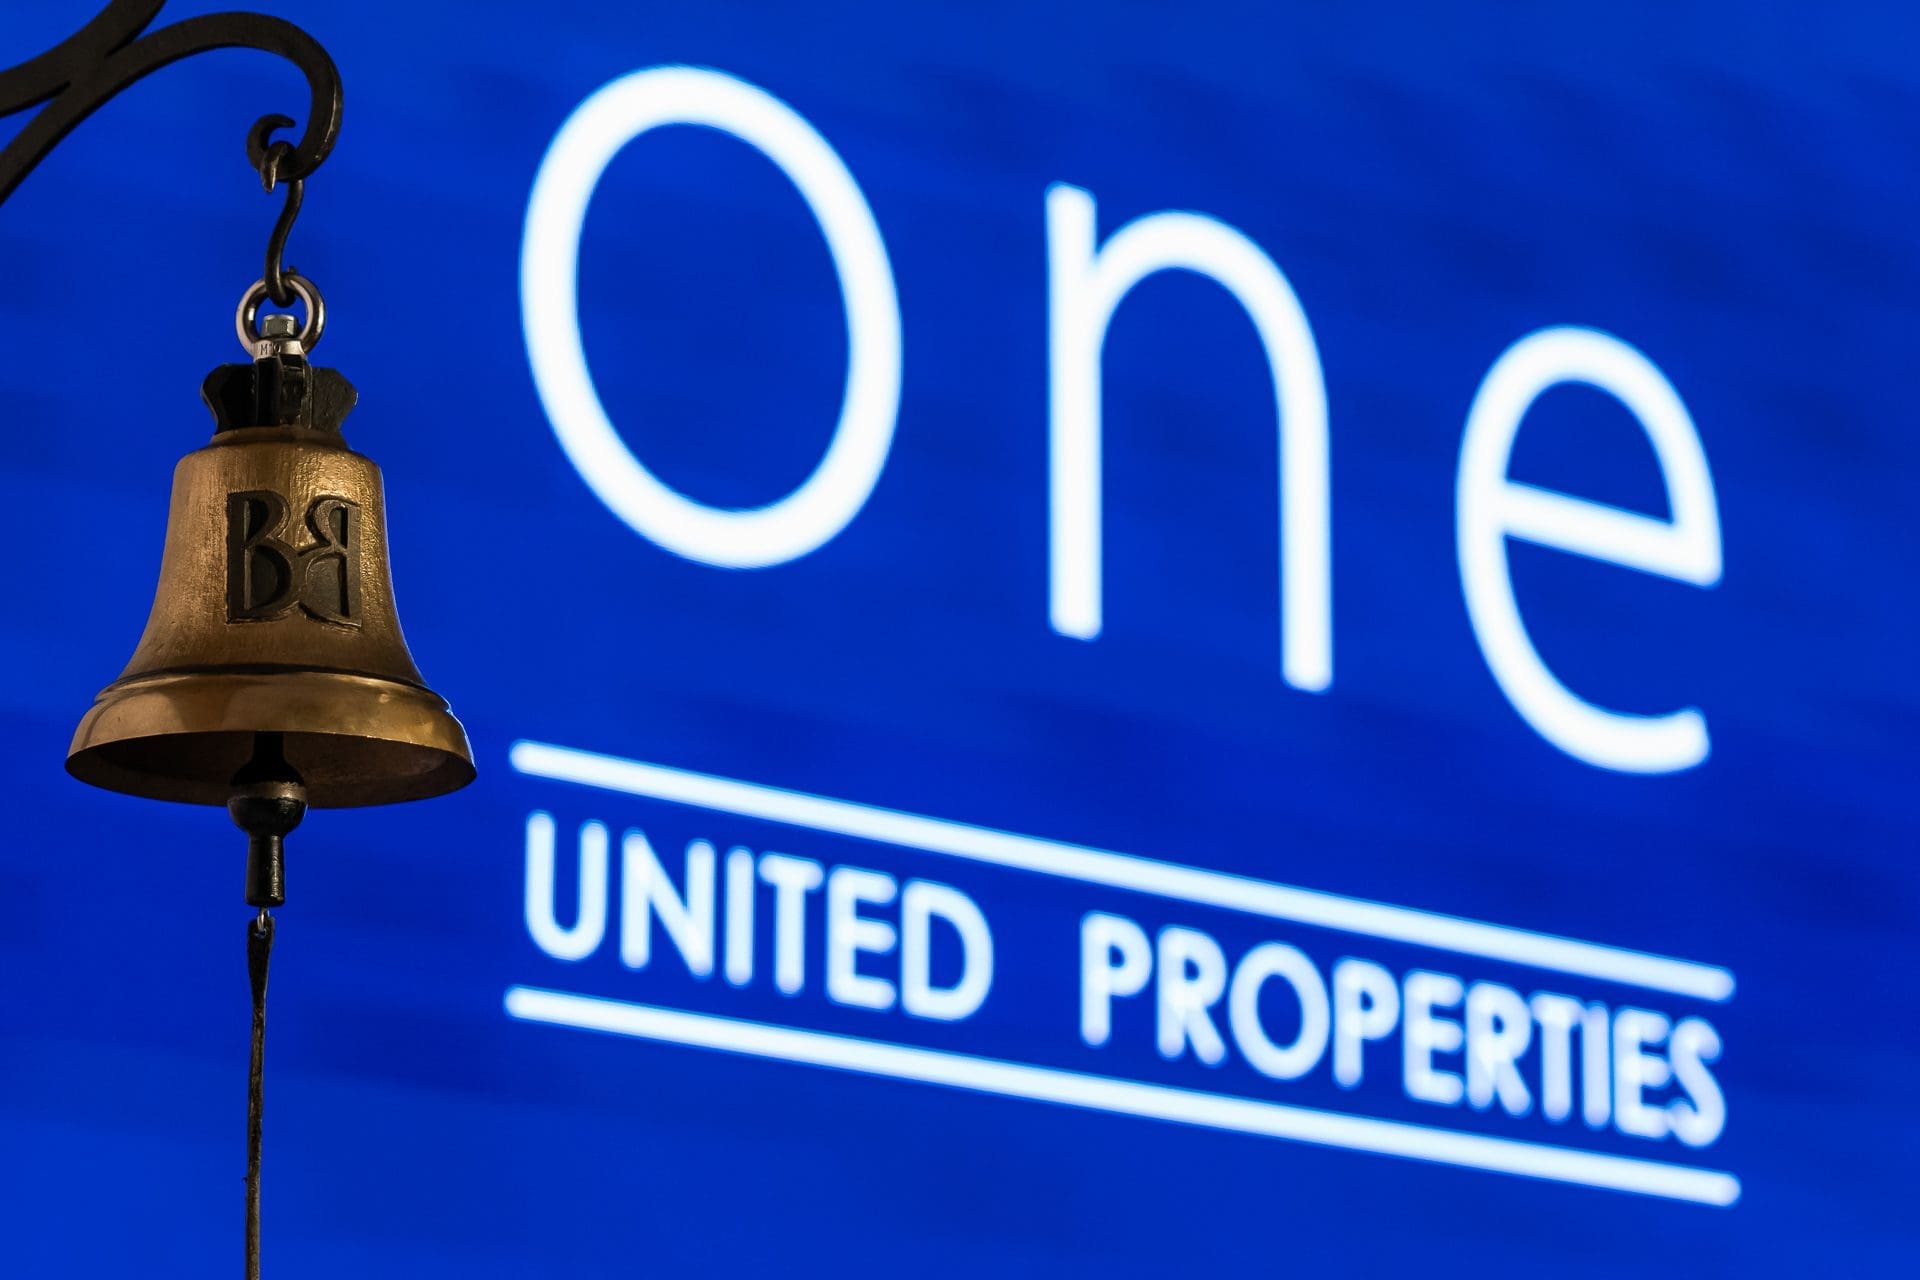 One United Properties1 - One United Properties cumpără o clădire din București cu 13,5 milioane de euro